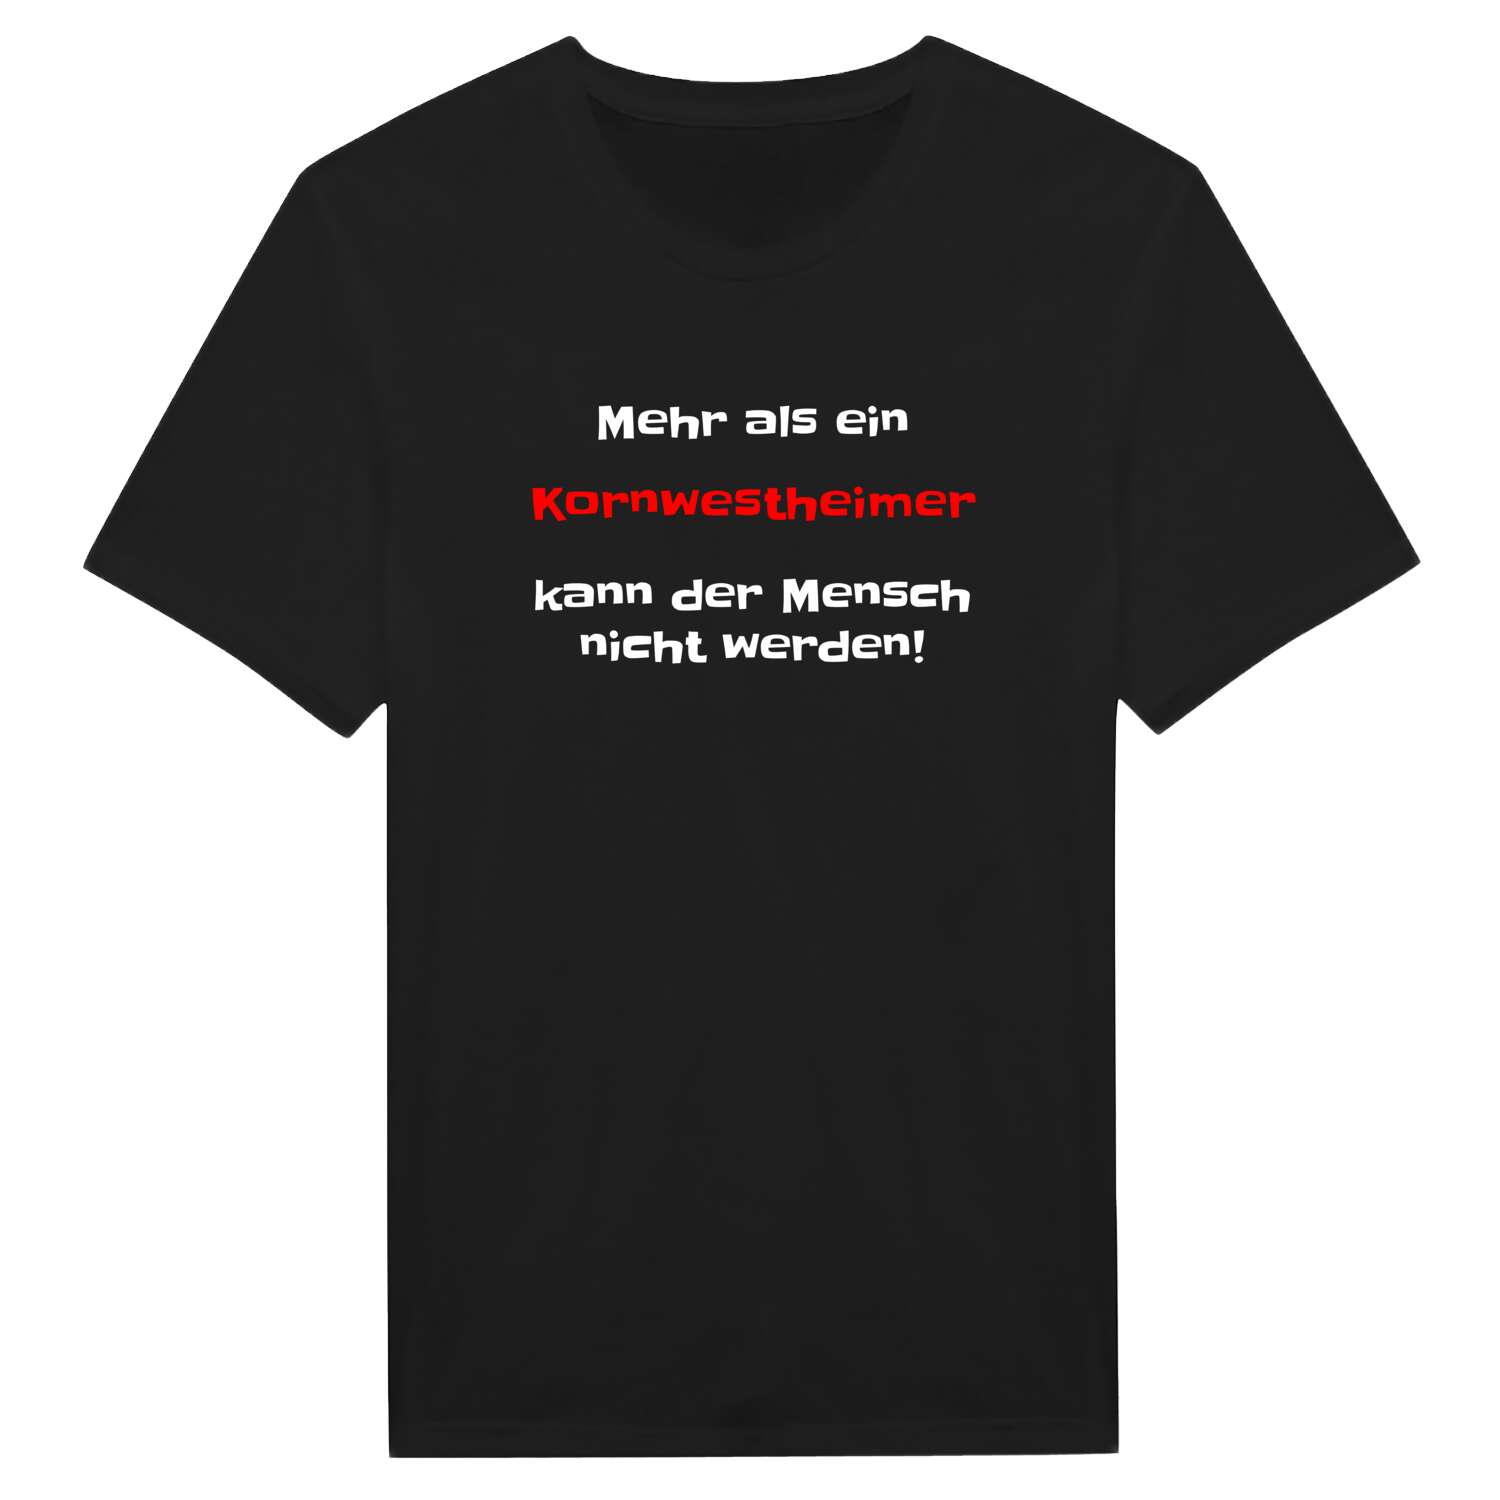 Kornwestheim T-Shirt »Mehr als ein«